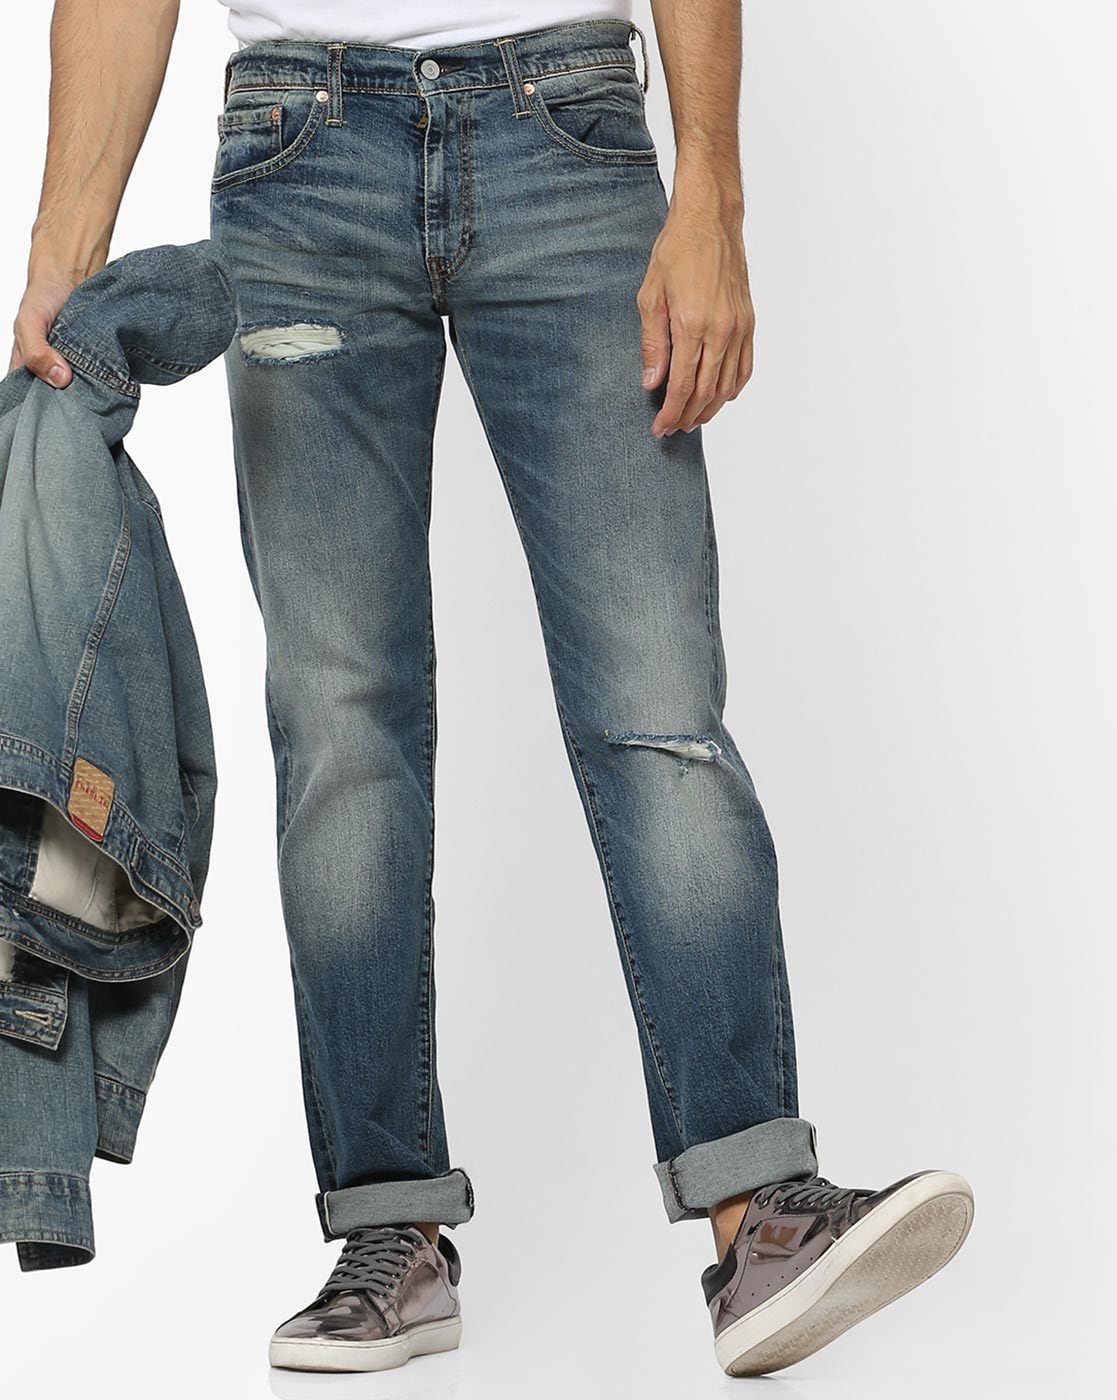 levis jeans online